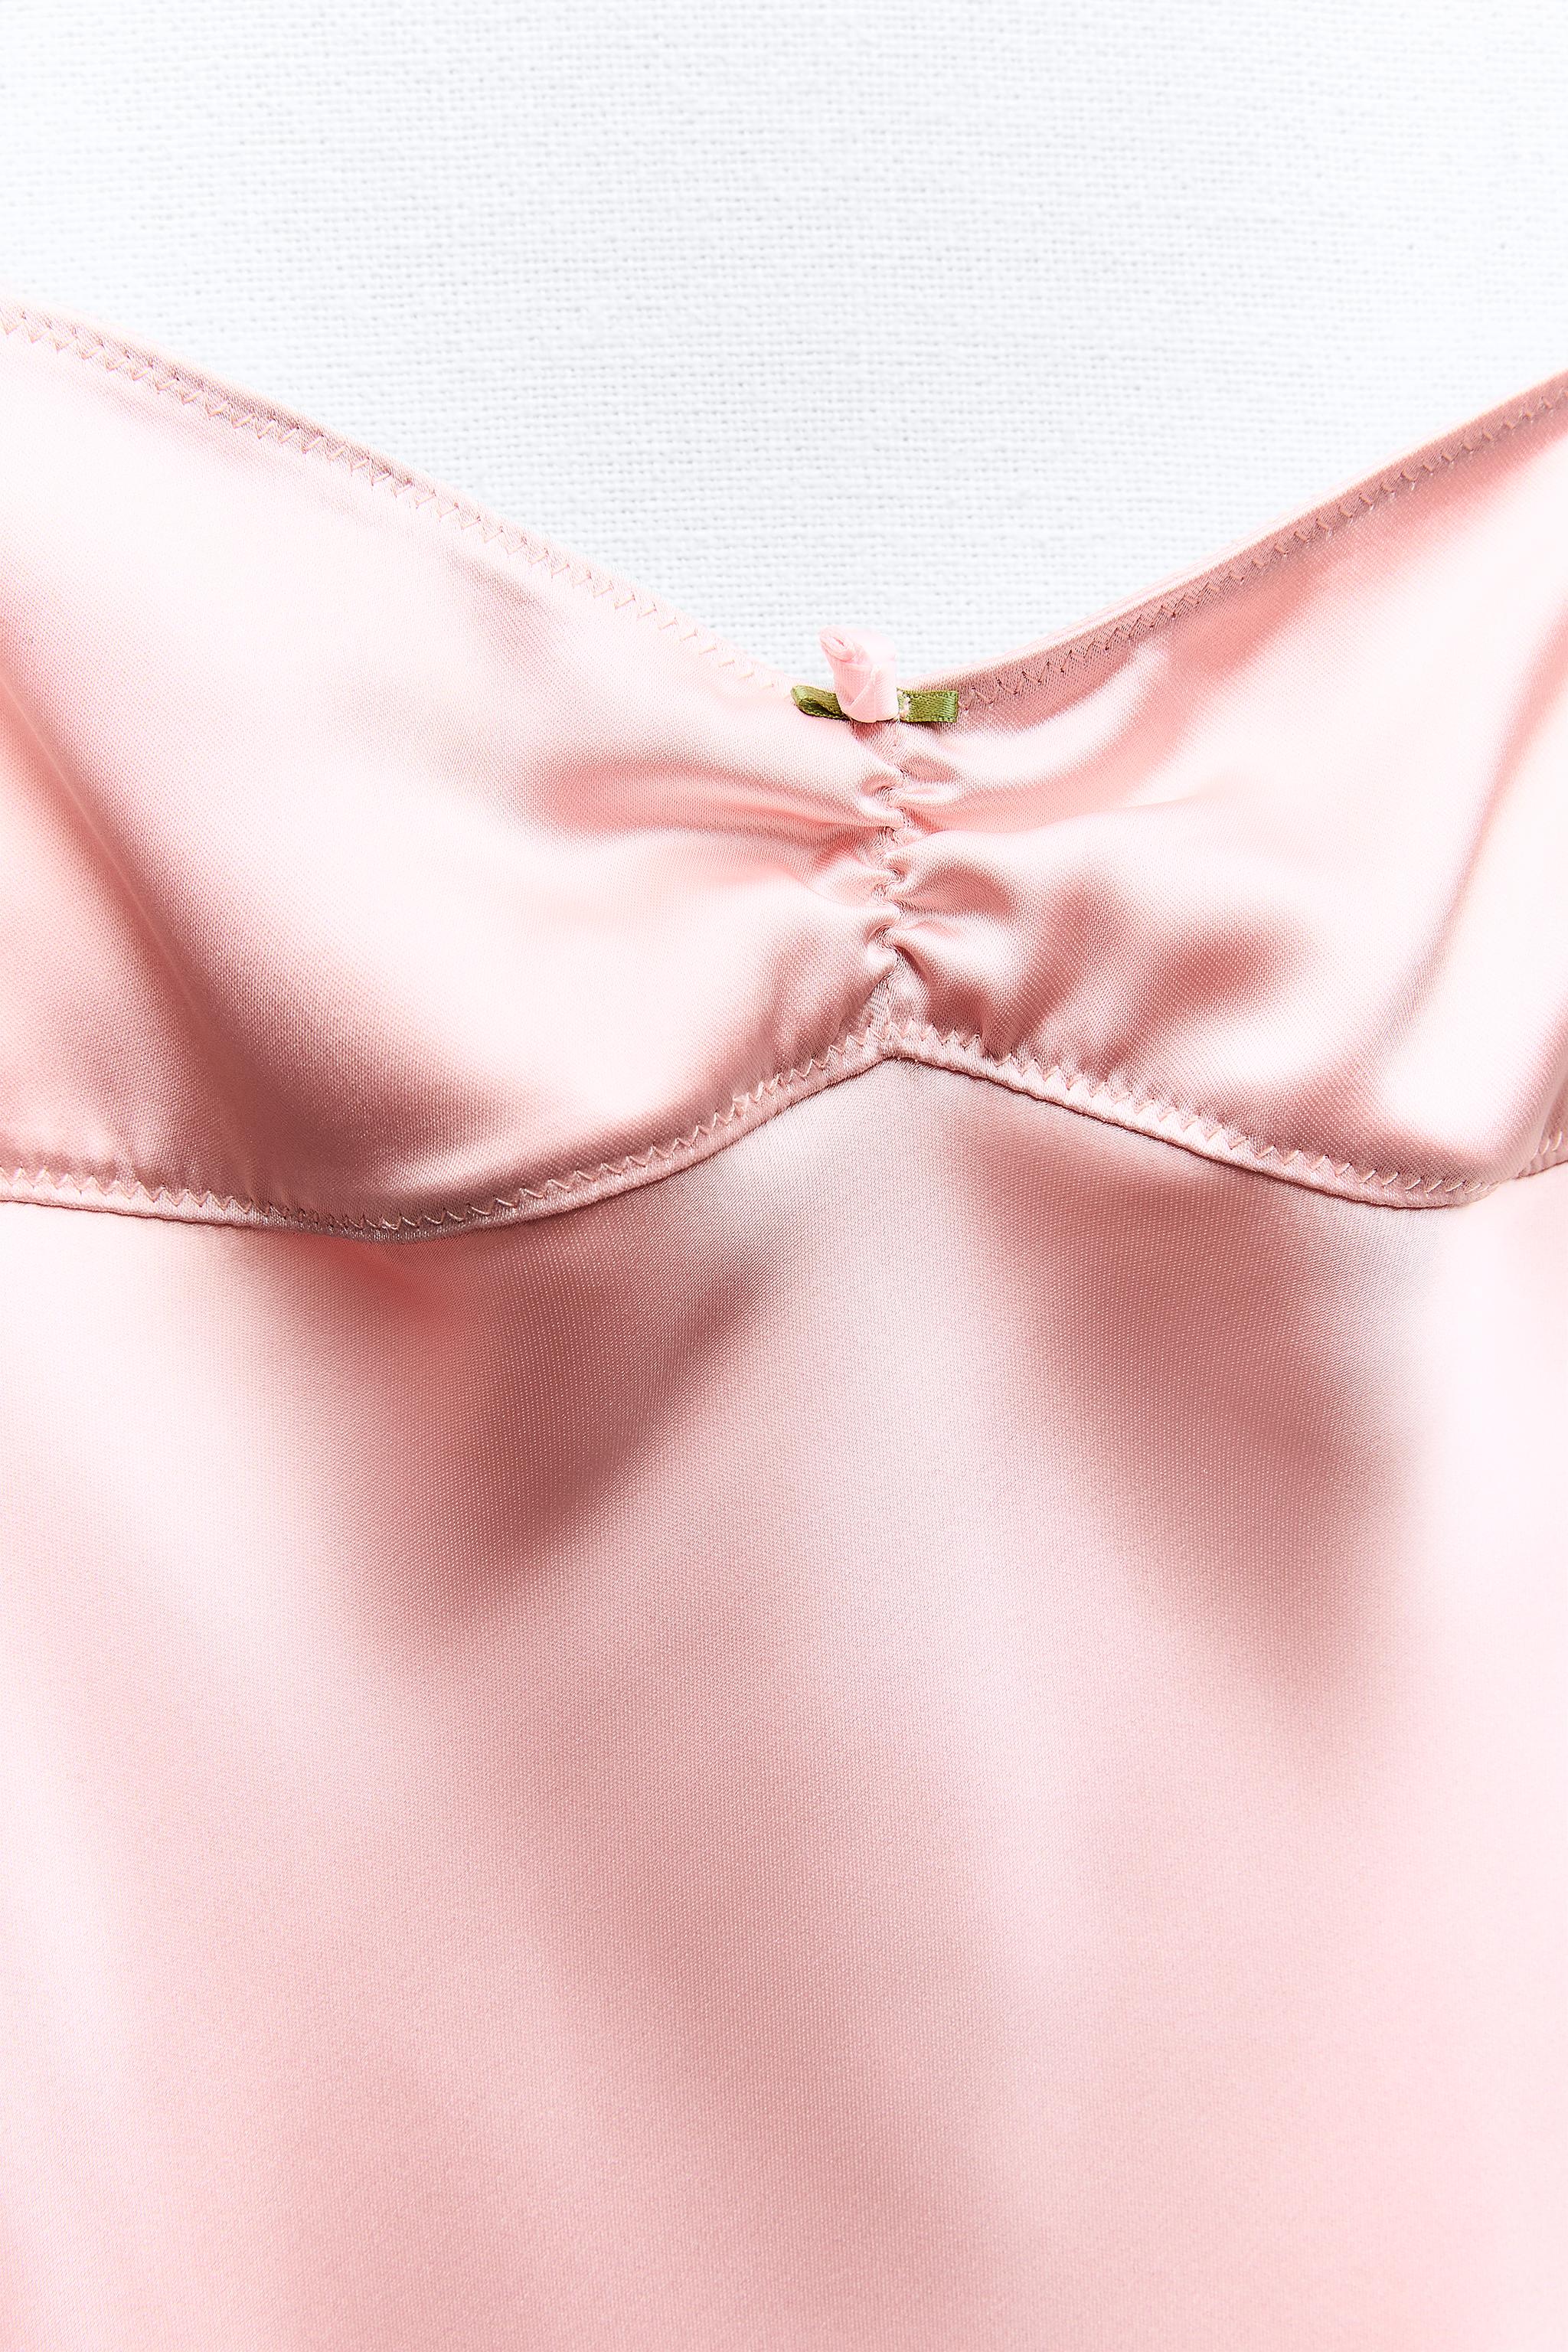 Obsessed is an understatement 😍 viral pink satin Zara dress 💘 #zaras